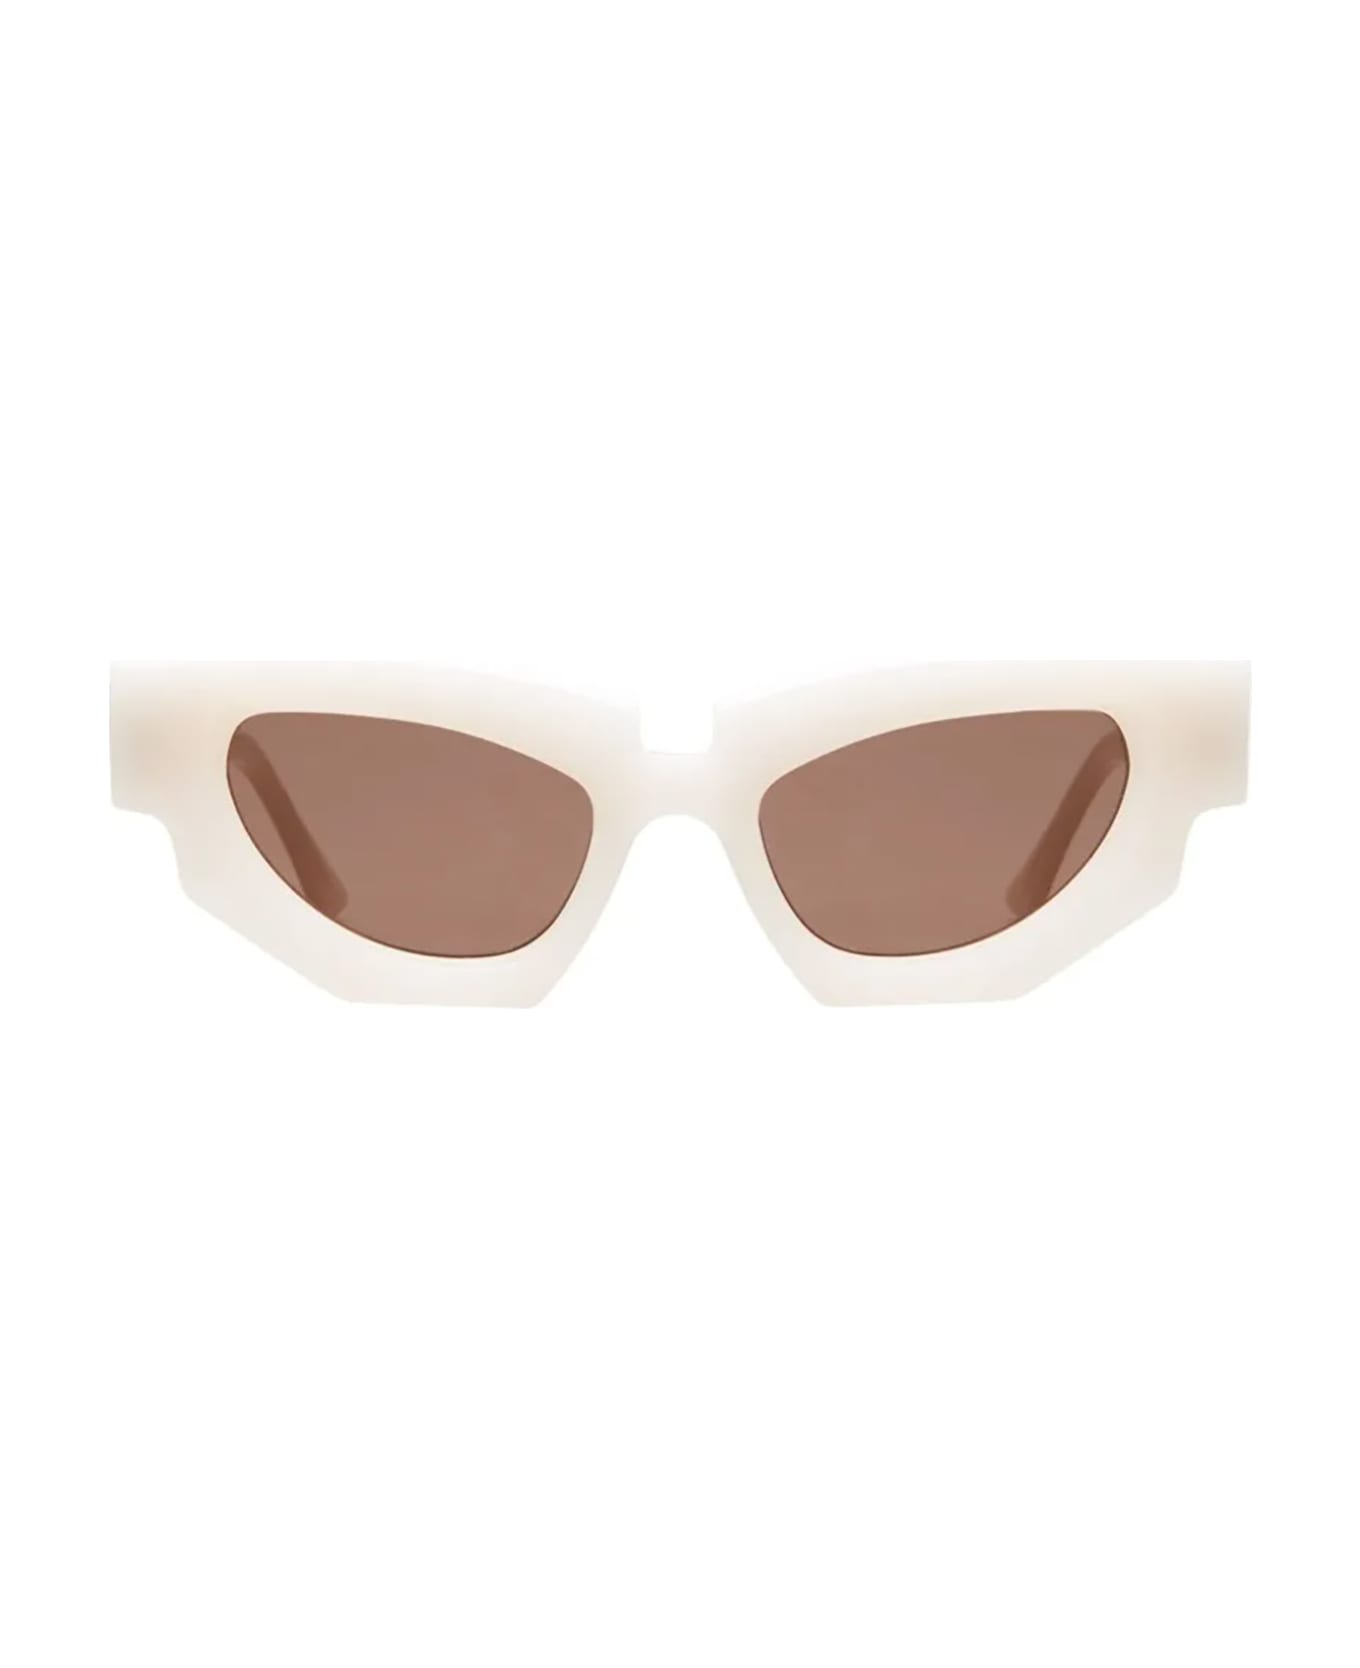 Kuboraum F5 Sunglasses - Wh サングラス